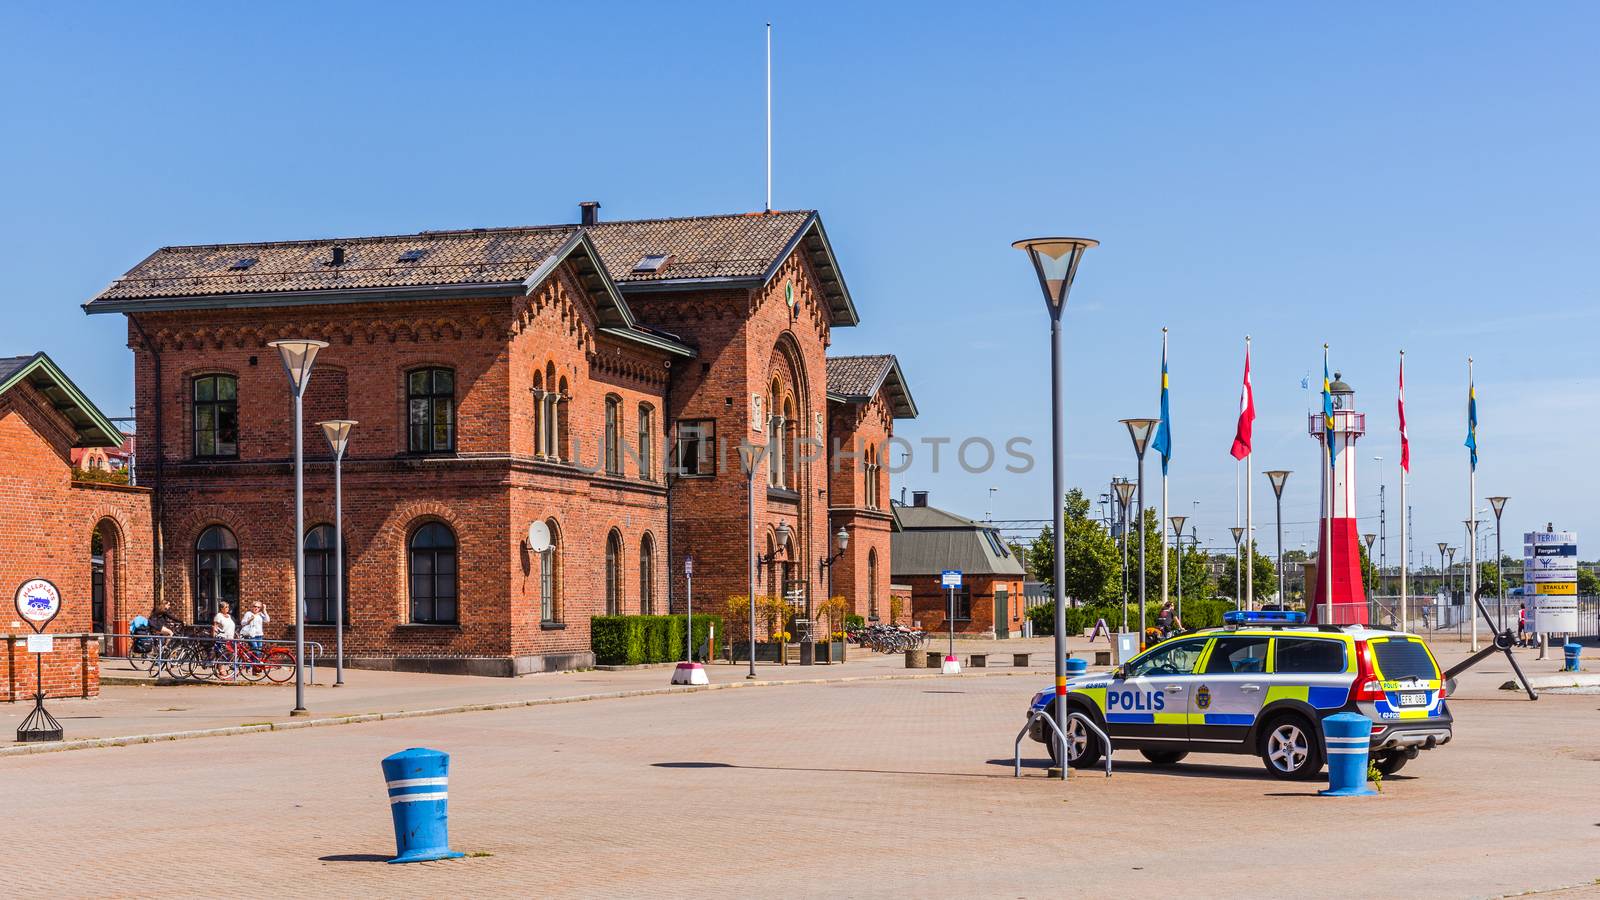 Railway station in Ystad by pawel_szczepanski